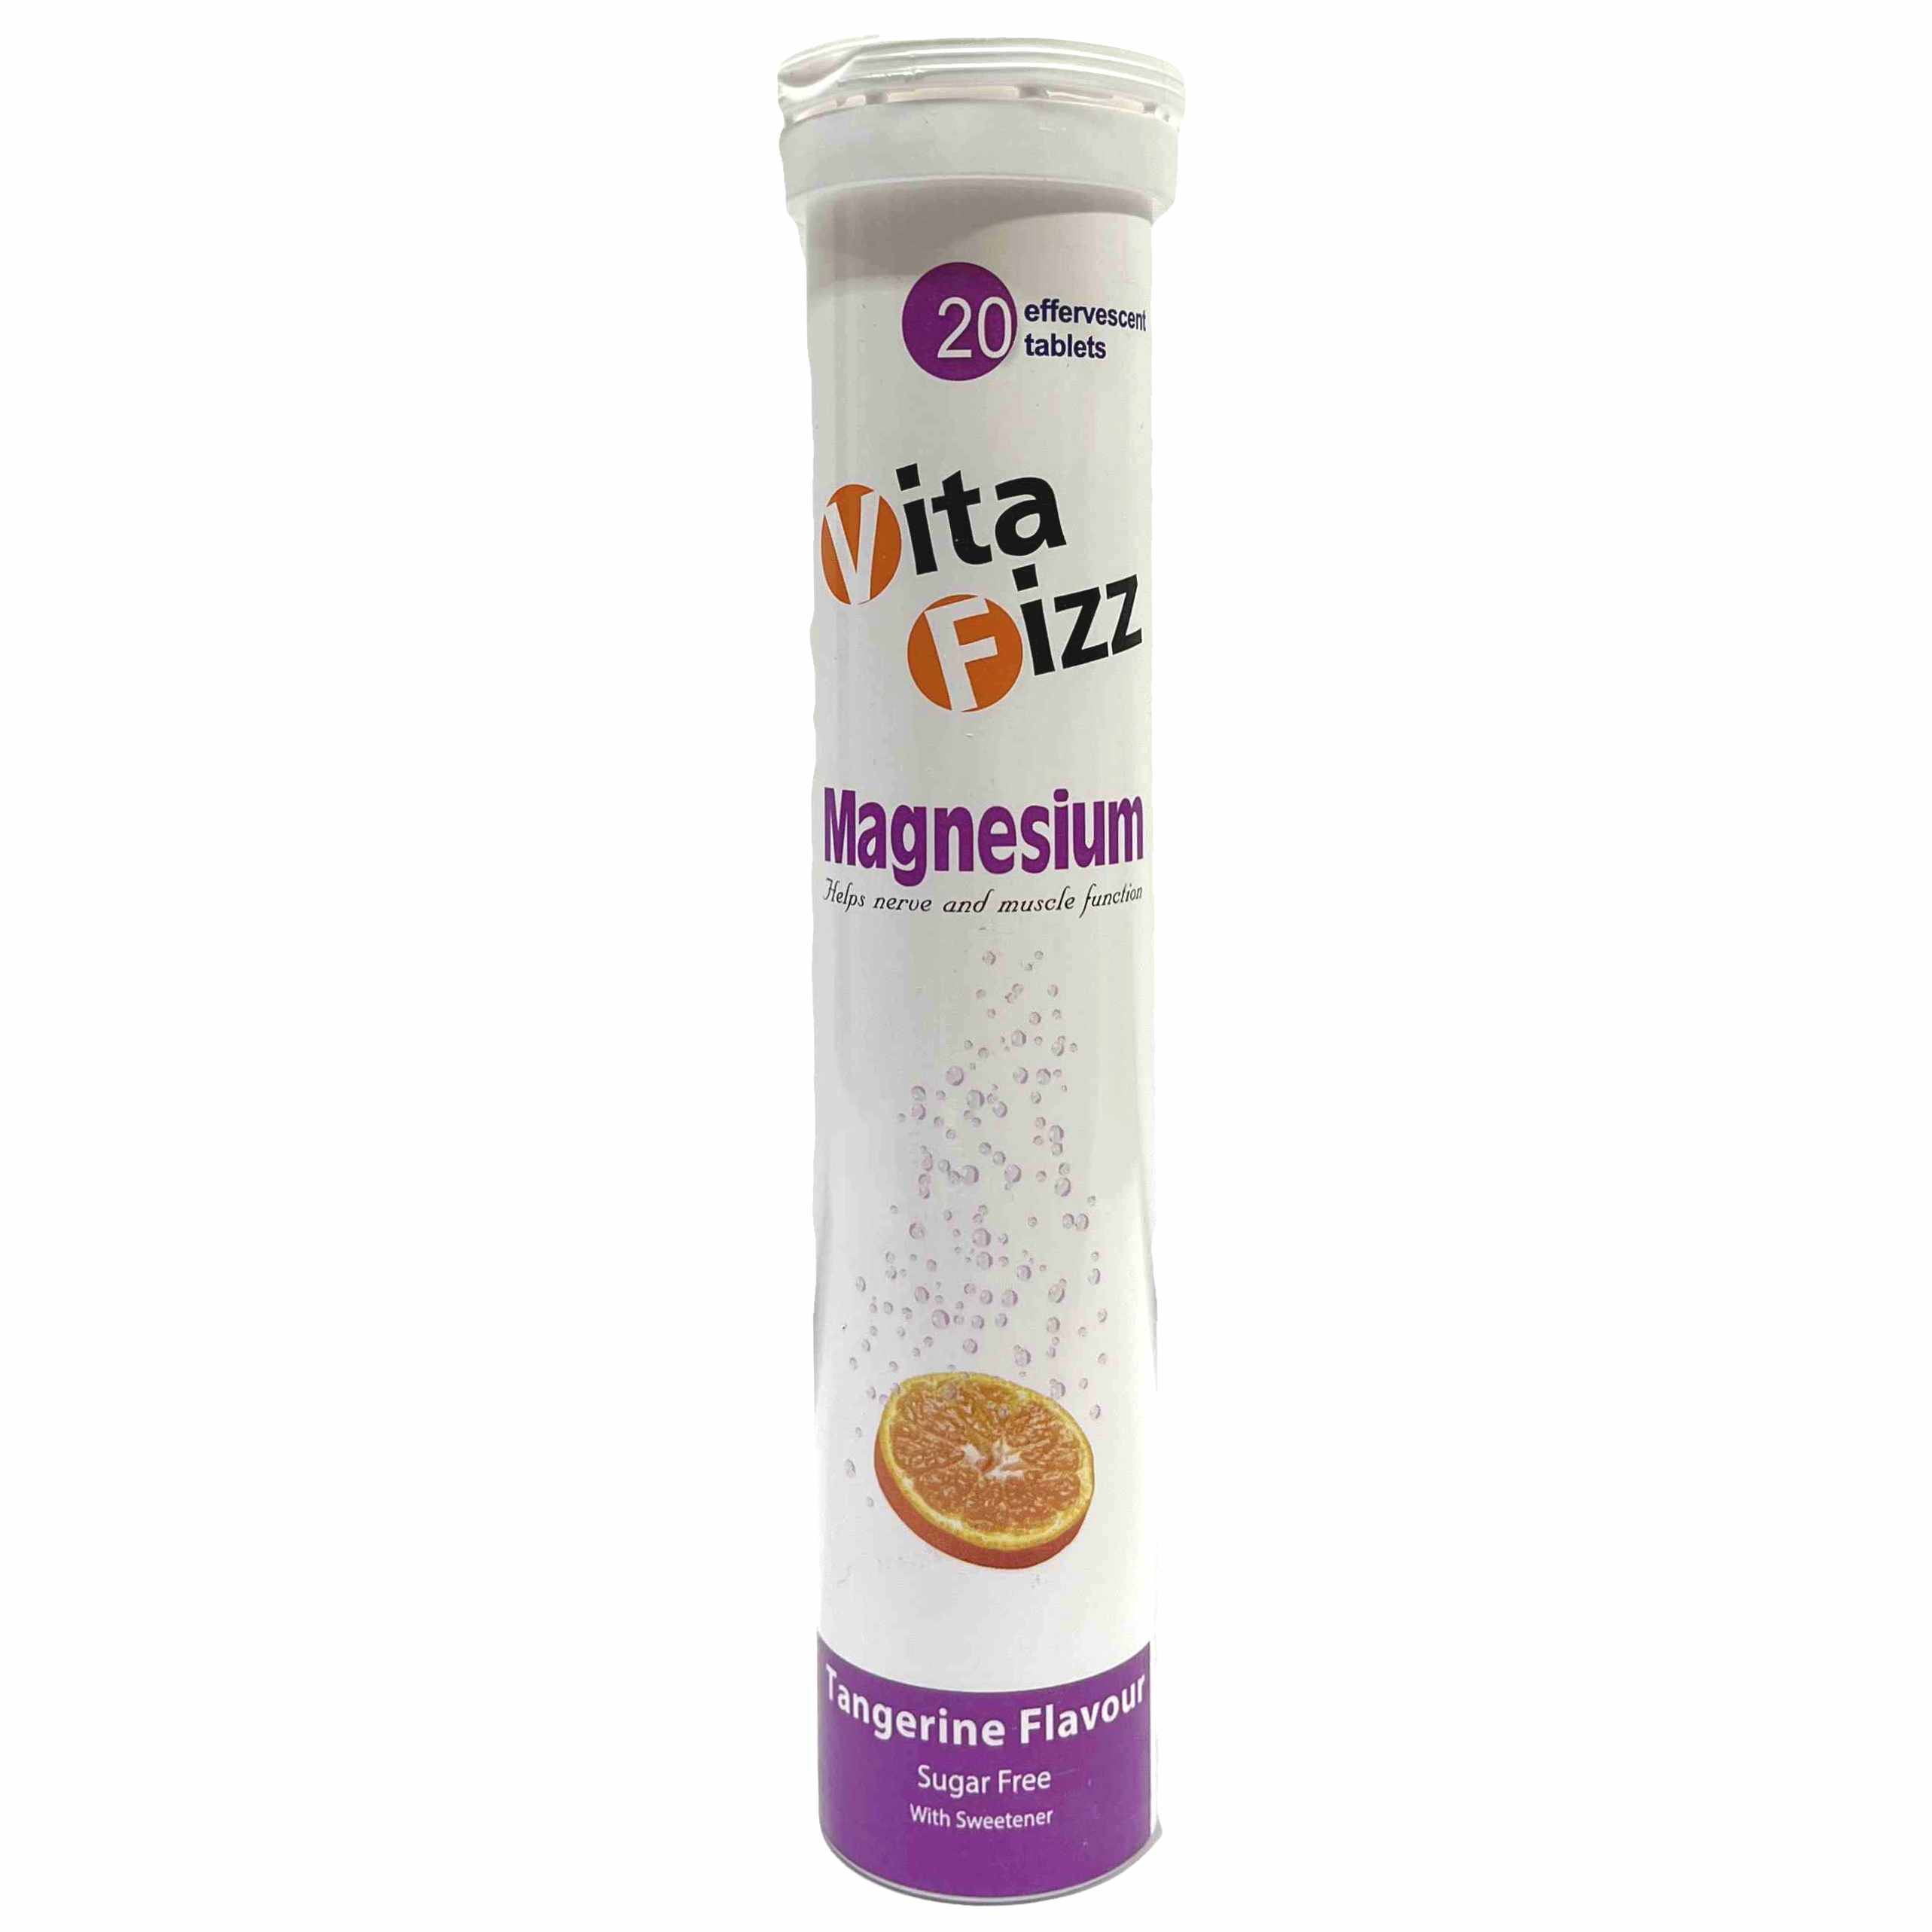 قرص جوشان بدون قند منیزیم ویتافیز Vita Fizz Magnesium